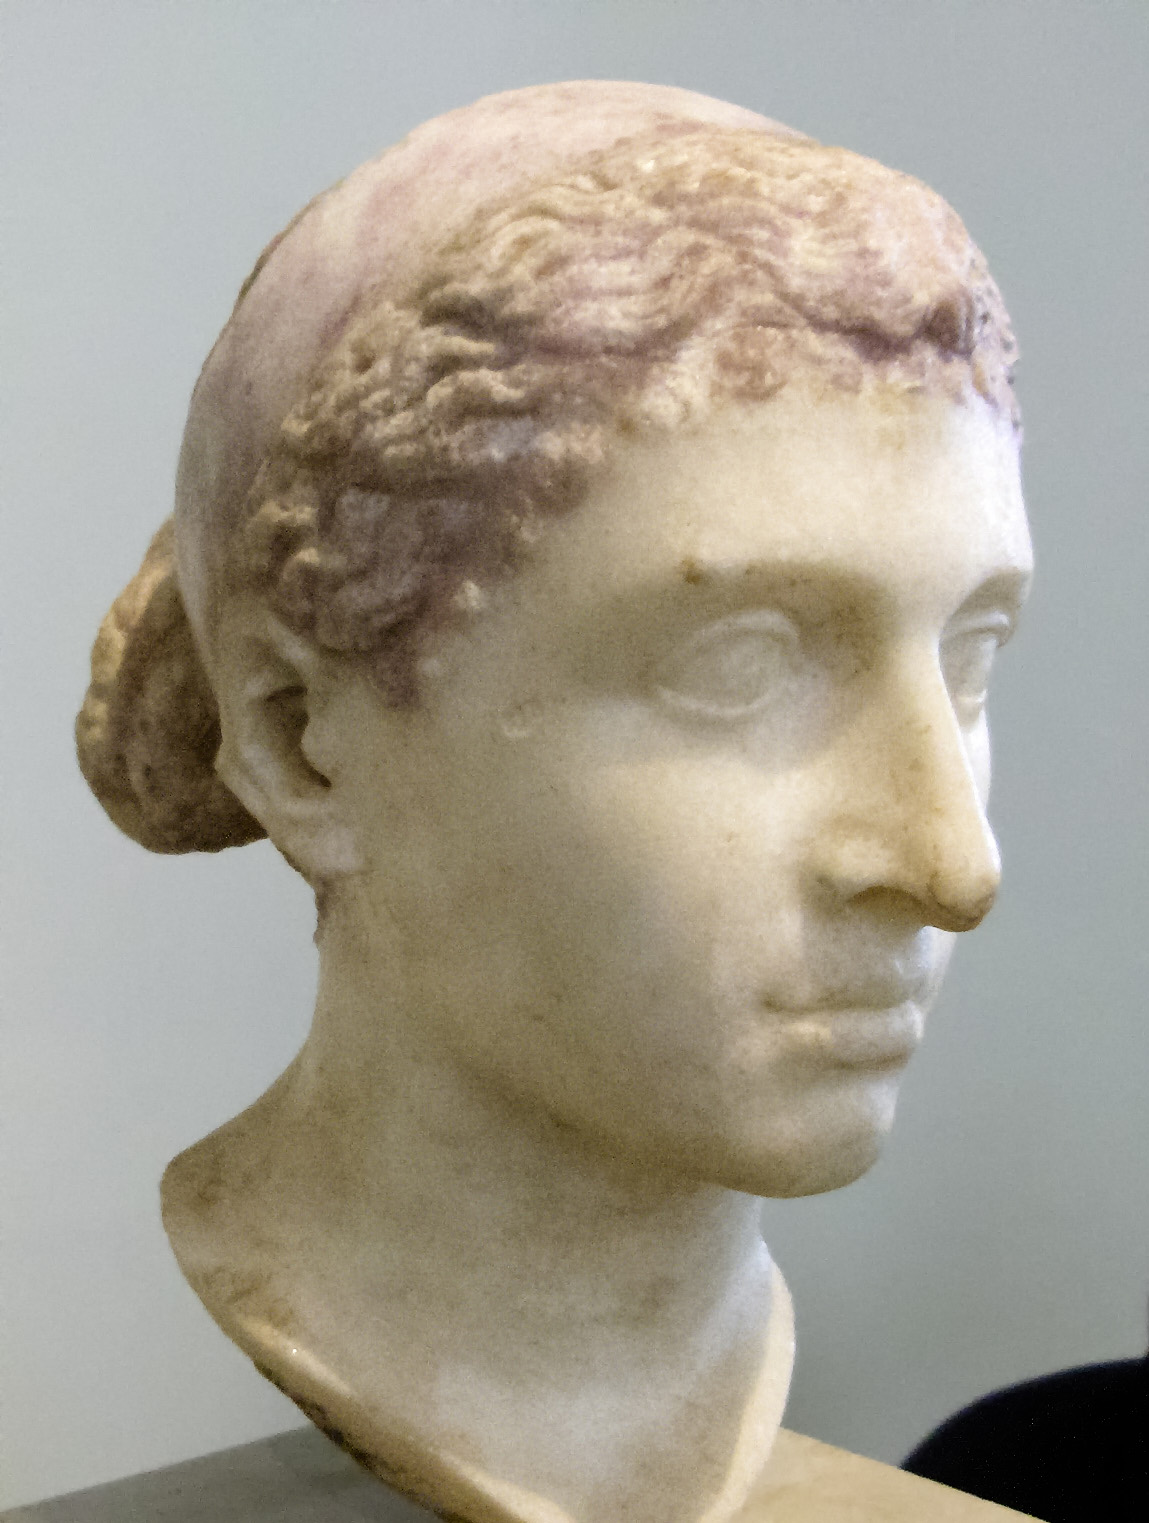 Cleopatra in History